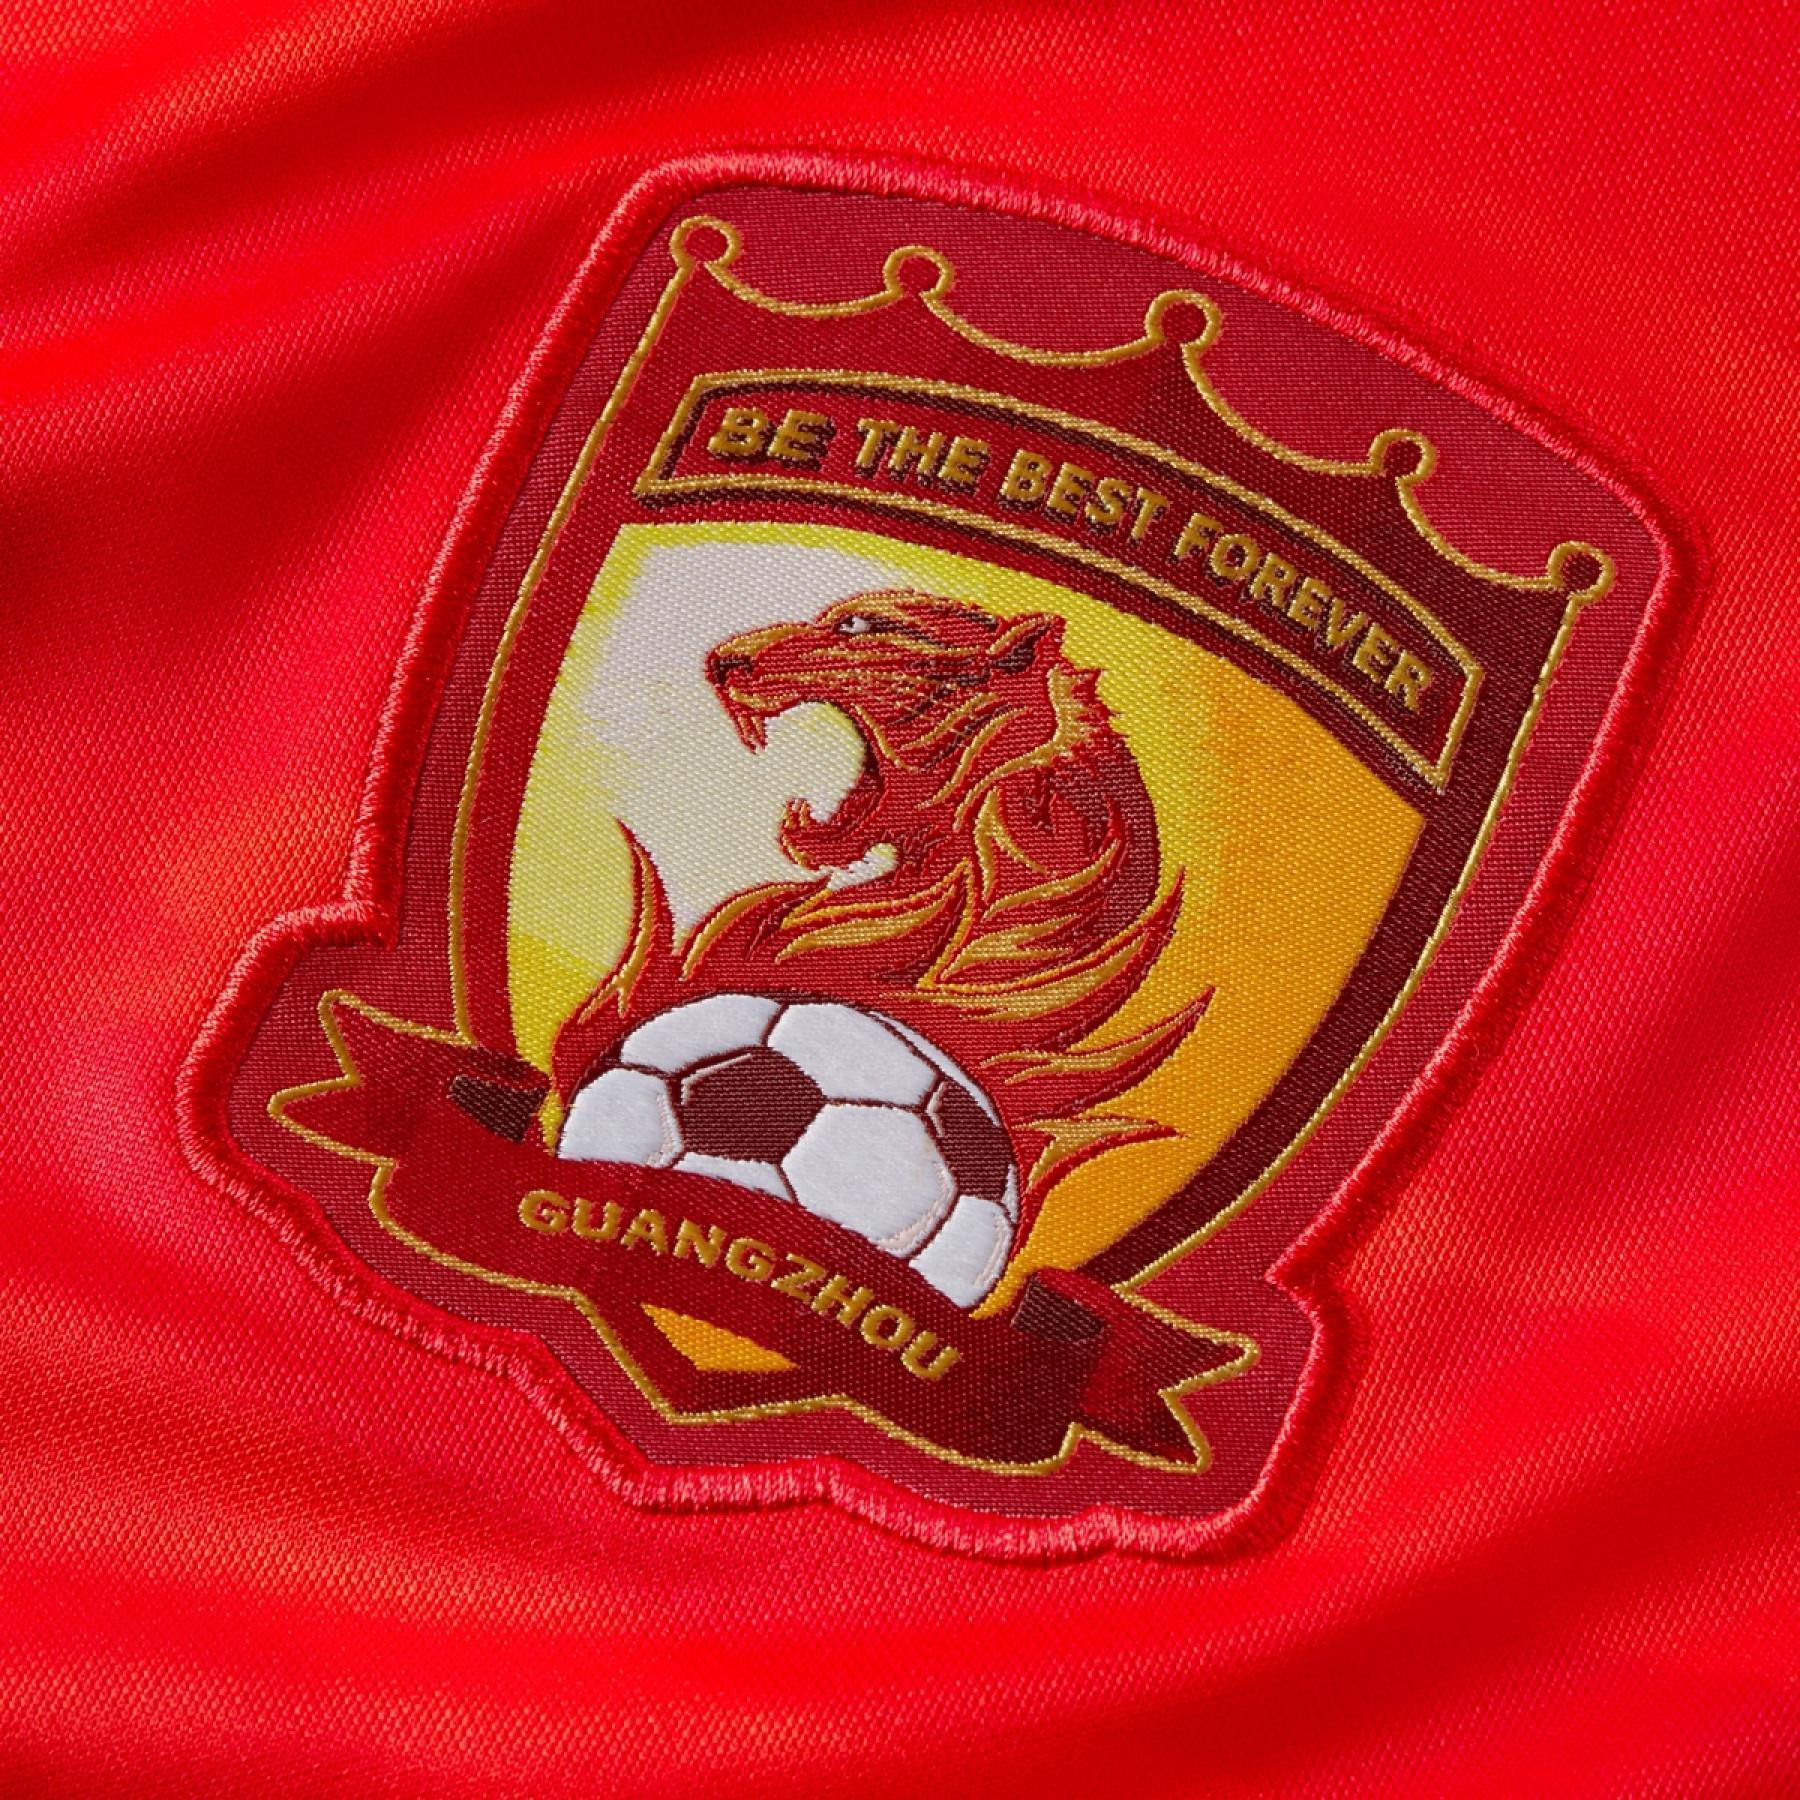 Home jersey Guangzhou Evergrande FC 2020/21